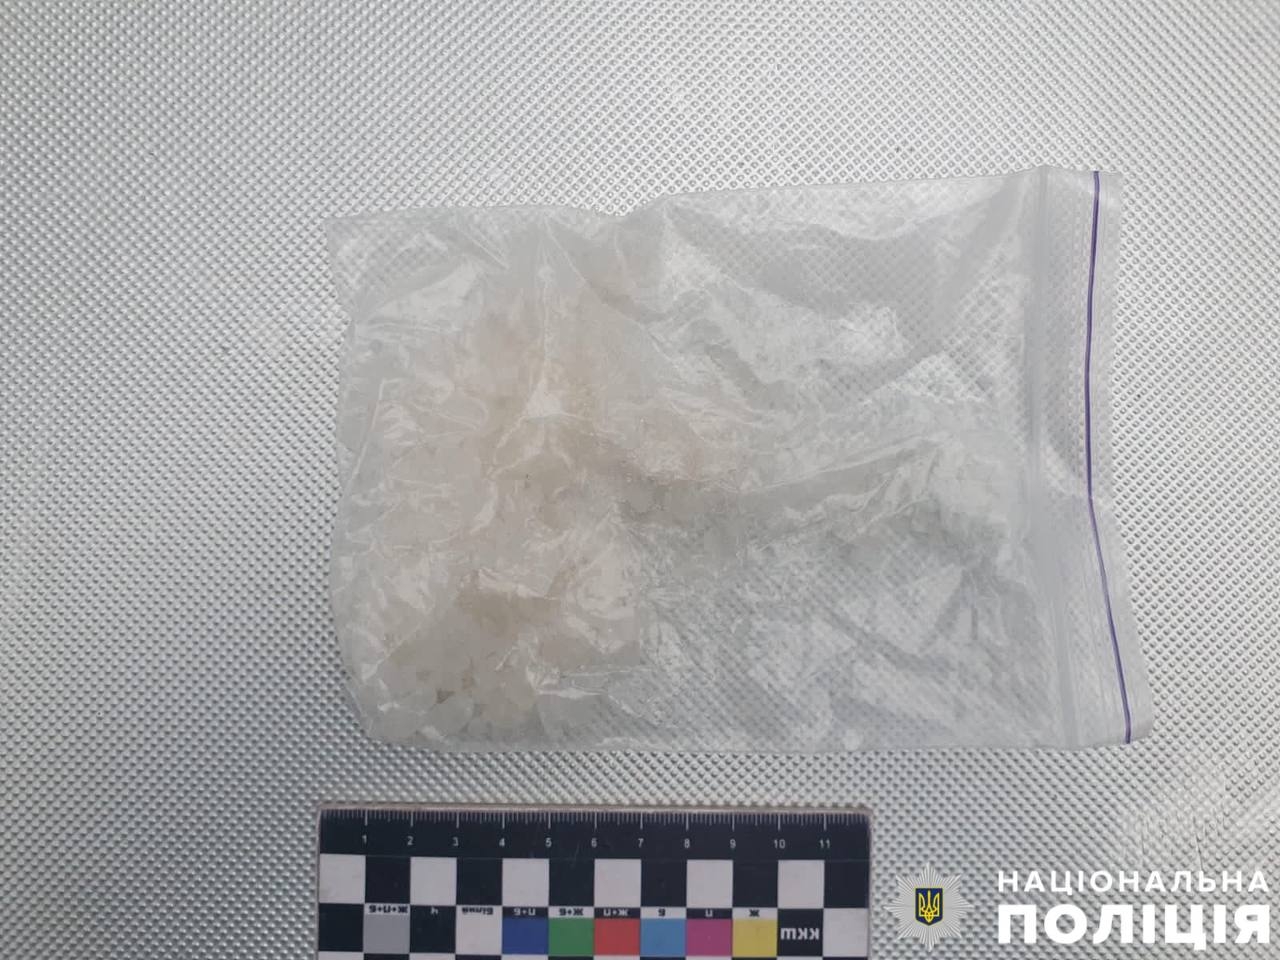 У Вінниці затримали чоловіка з 50-грамовим пакетом “наркоти”